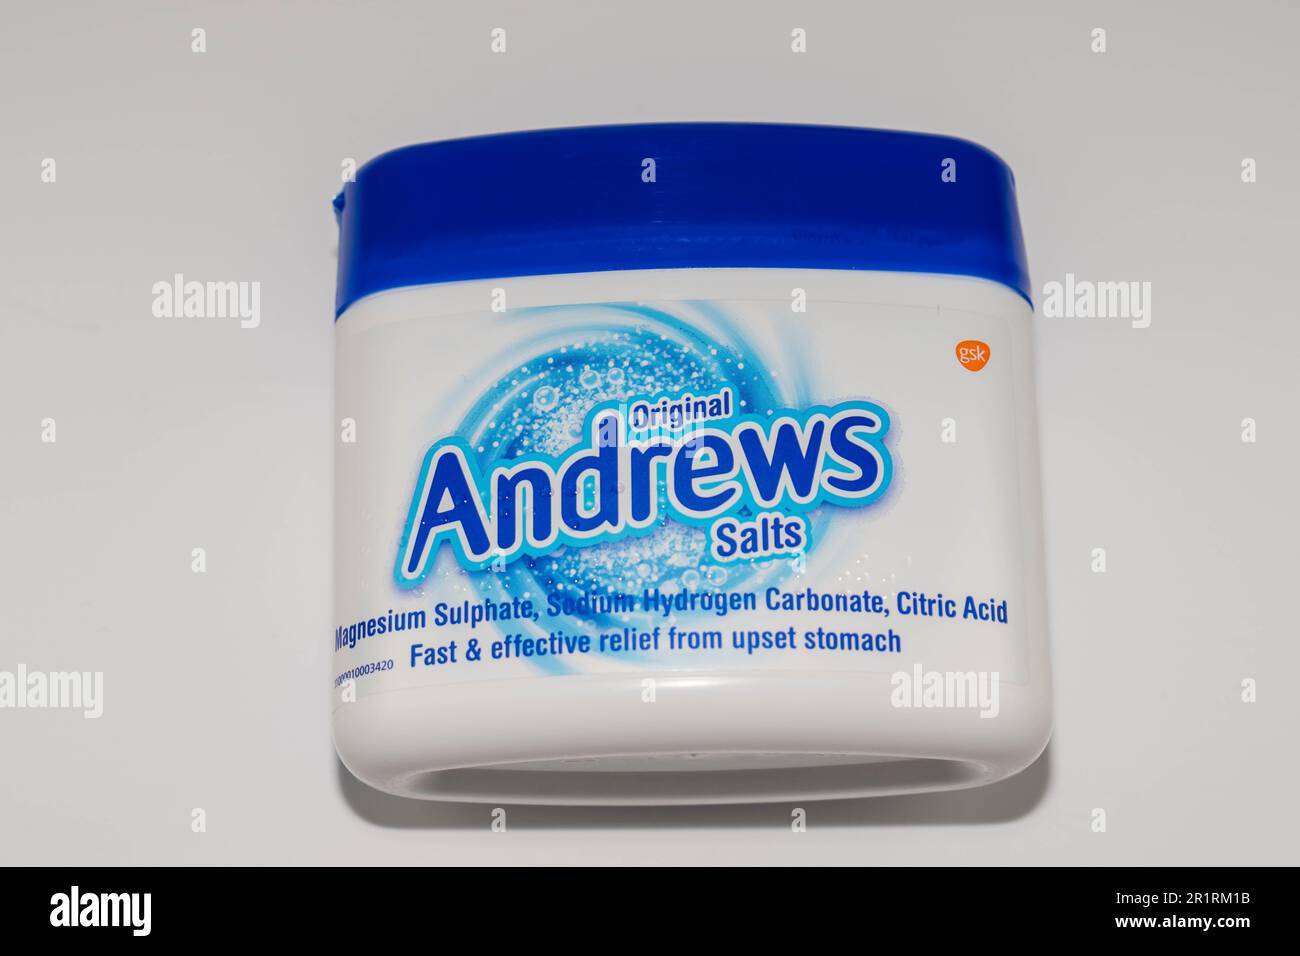 Foto di una vasca di sali di fegato Andrews su sfondo bianco Foto Stock